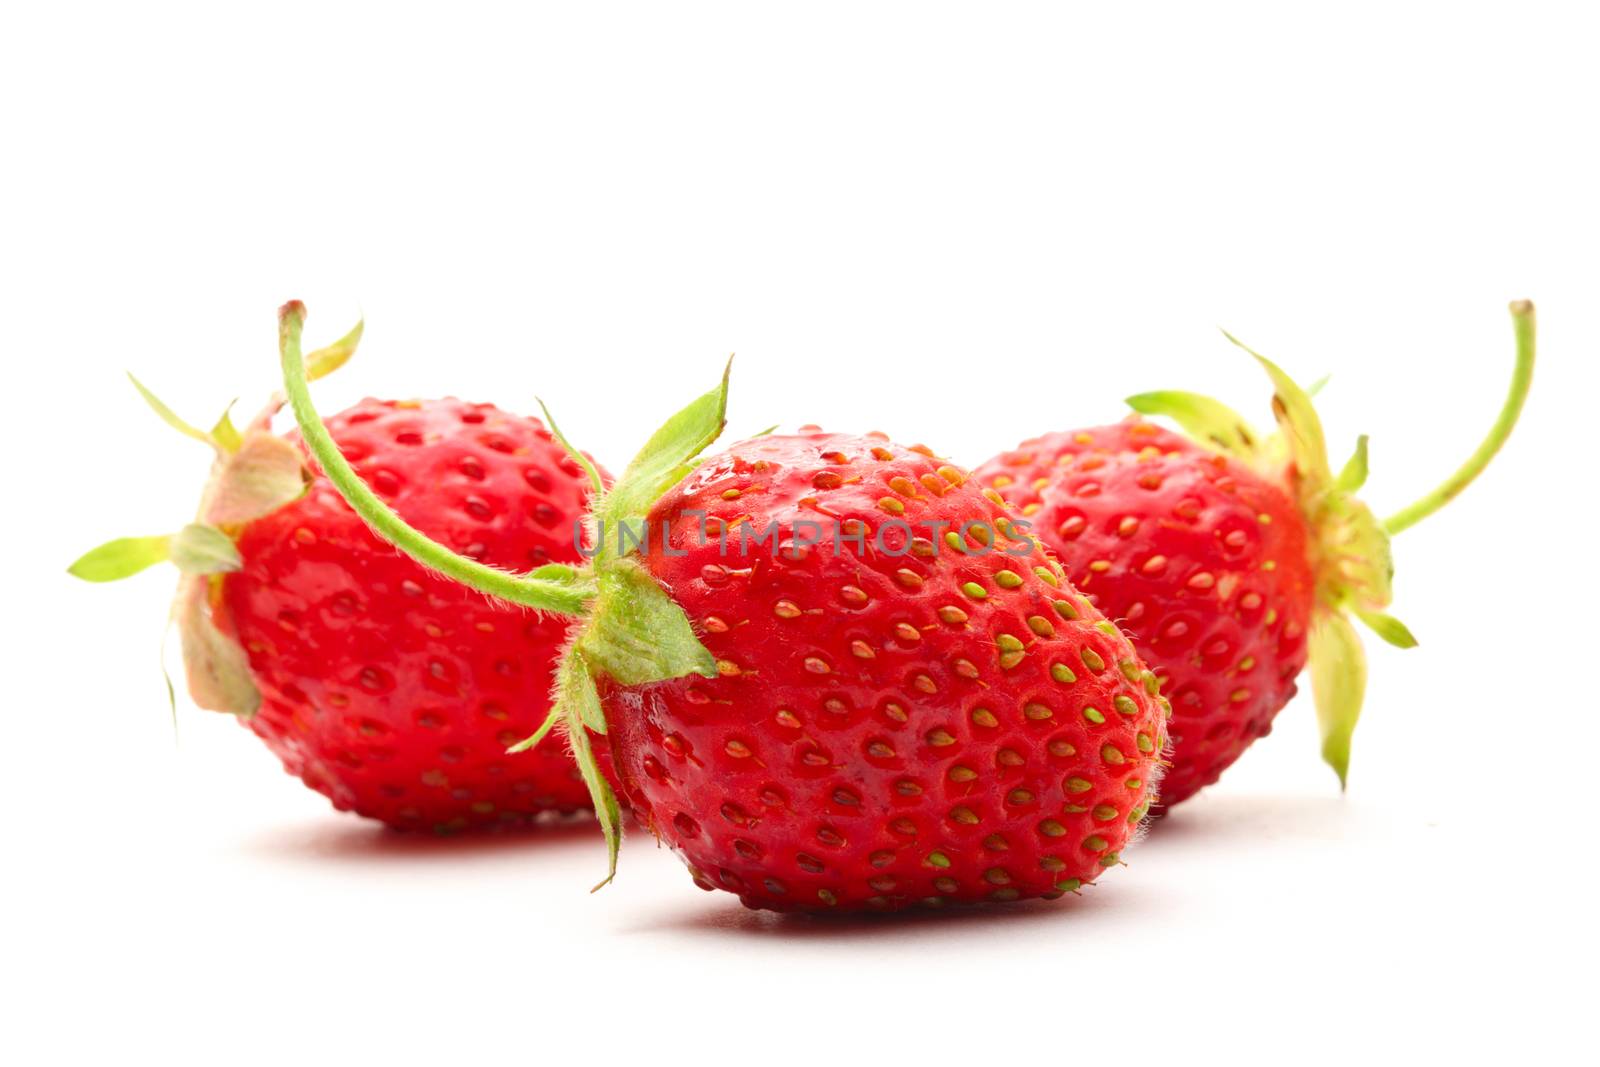 Ripe strawberry on white background by Garsya